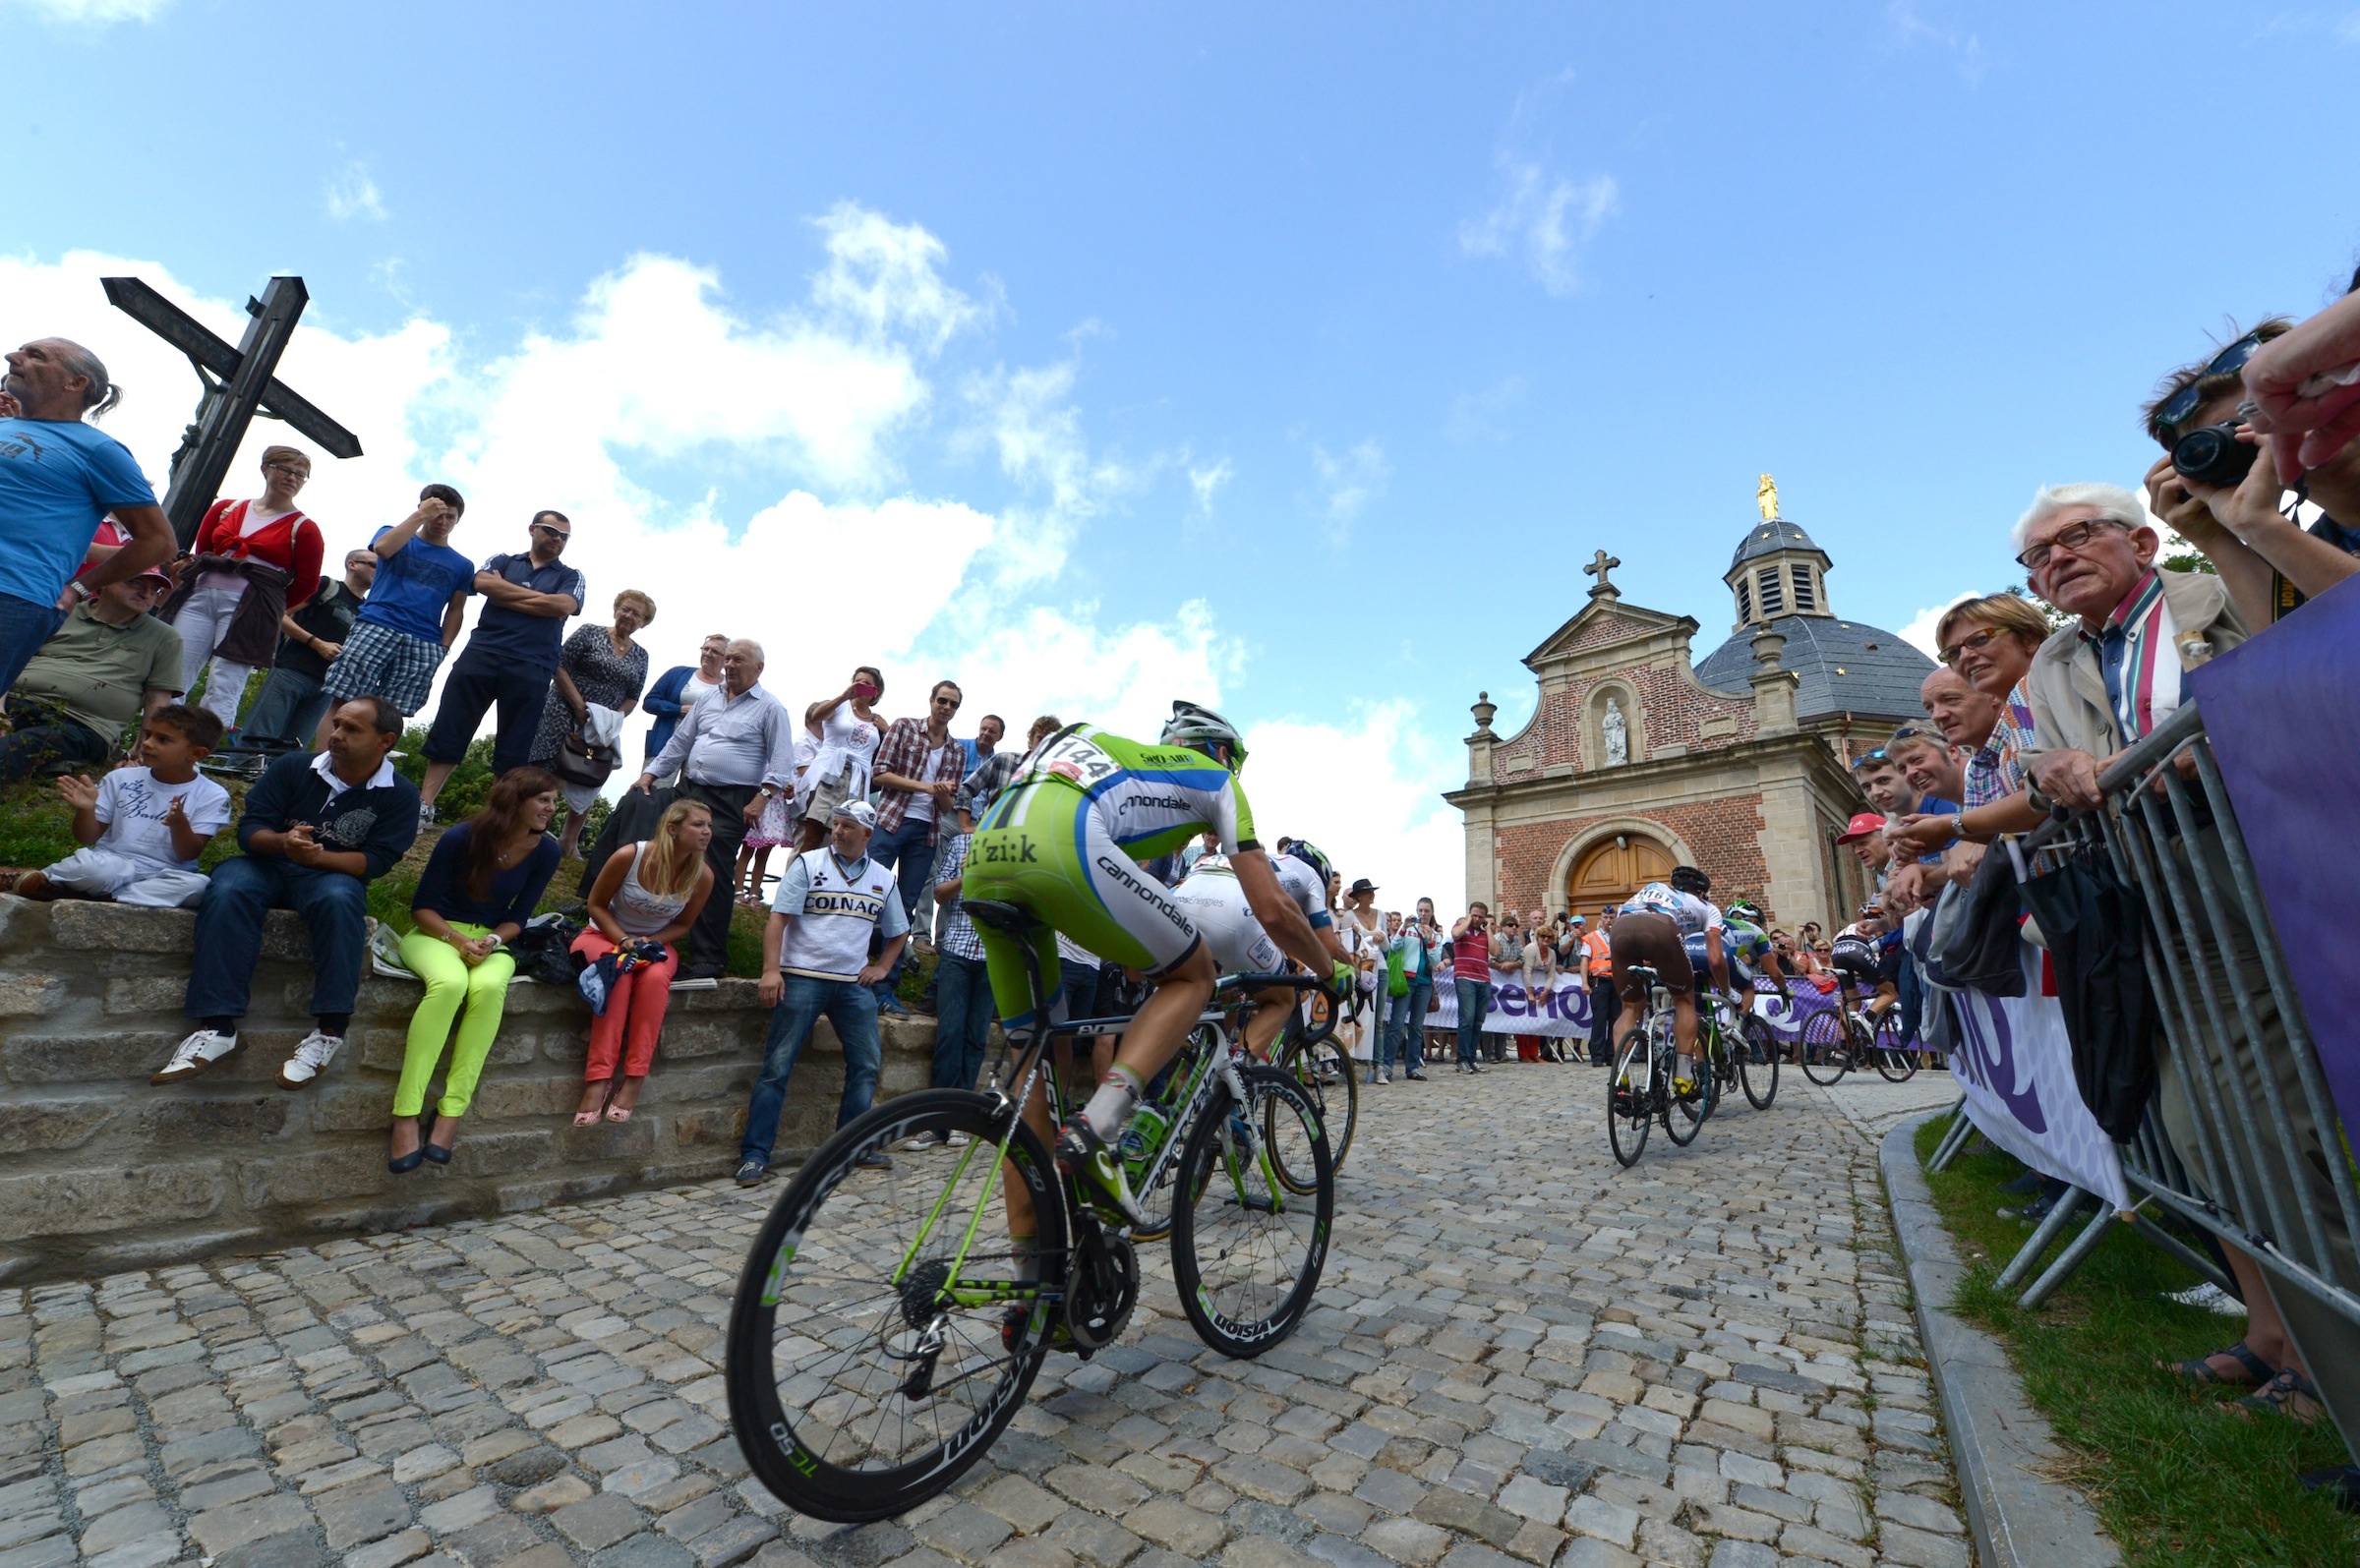 Le Tour du Benelux l'histoire de l'Eneco Tour dans le cyclisme